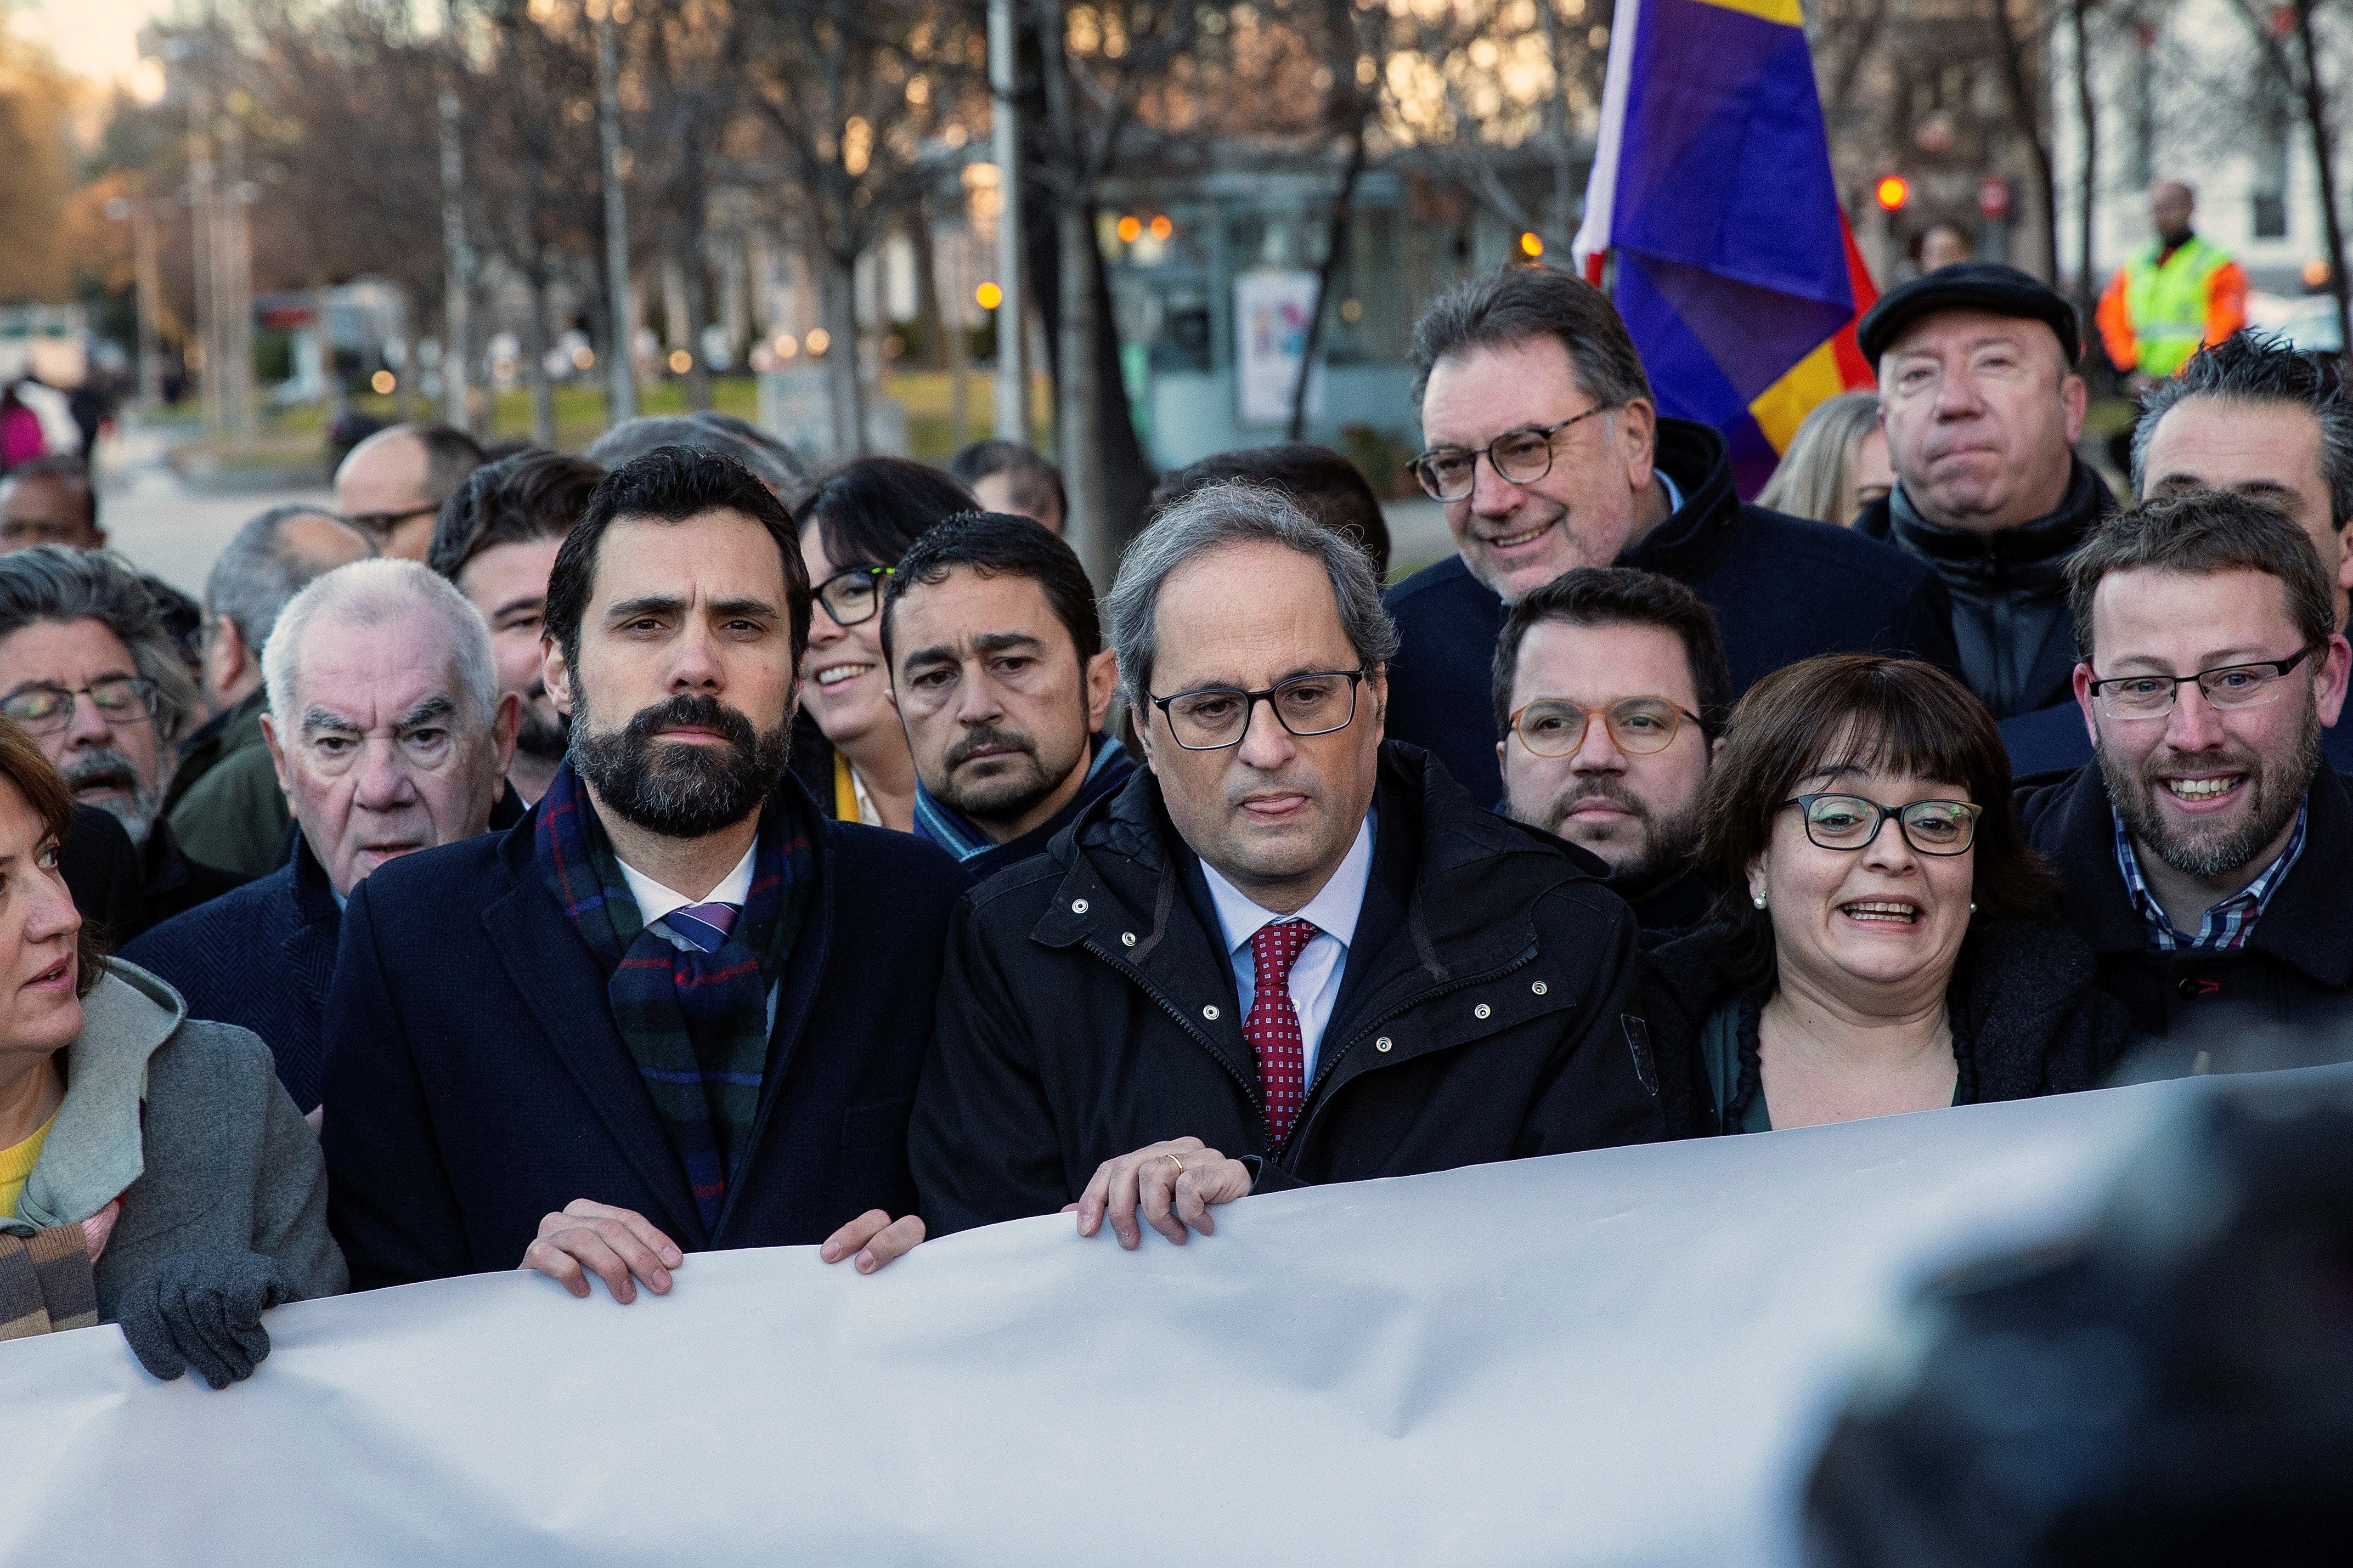 Institucions, partits i entitats, a Madrid: “Malgrat els dies durs, no ens rendirem”